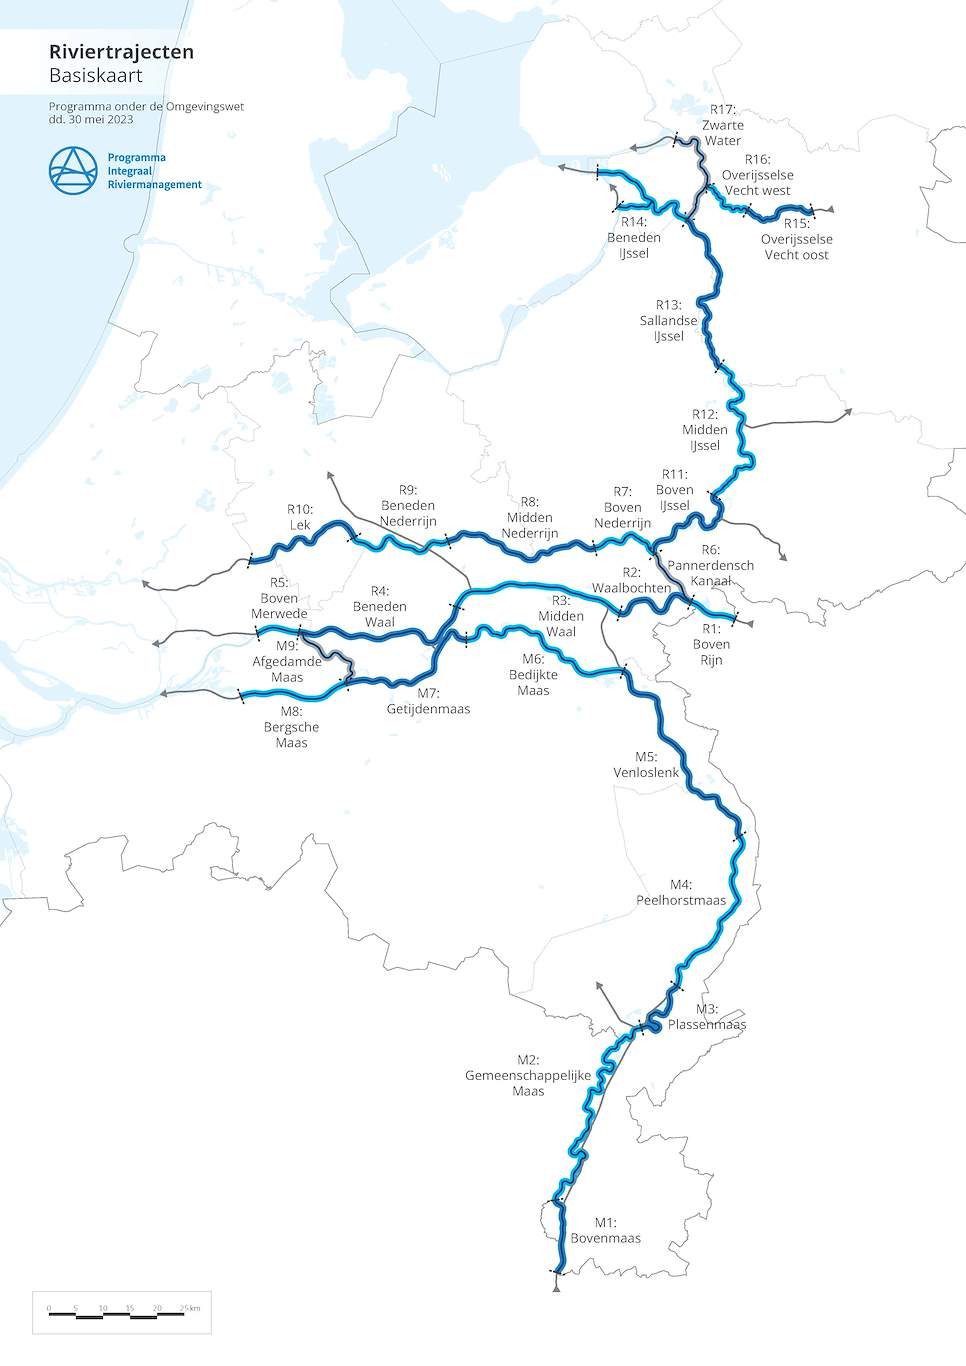 Deze afbeelding laat zien welke riviertrajecten onderdeel zijn van het plangebied Integraal Riviermanagement. Het gaat om de trajecten M1 tot en met M9 van de Maas en R1 tot en met R17 van de Rijntakken.